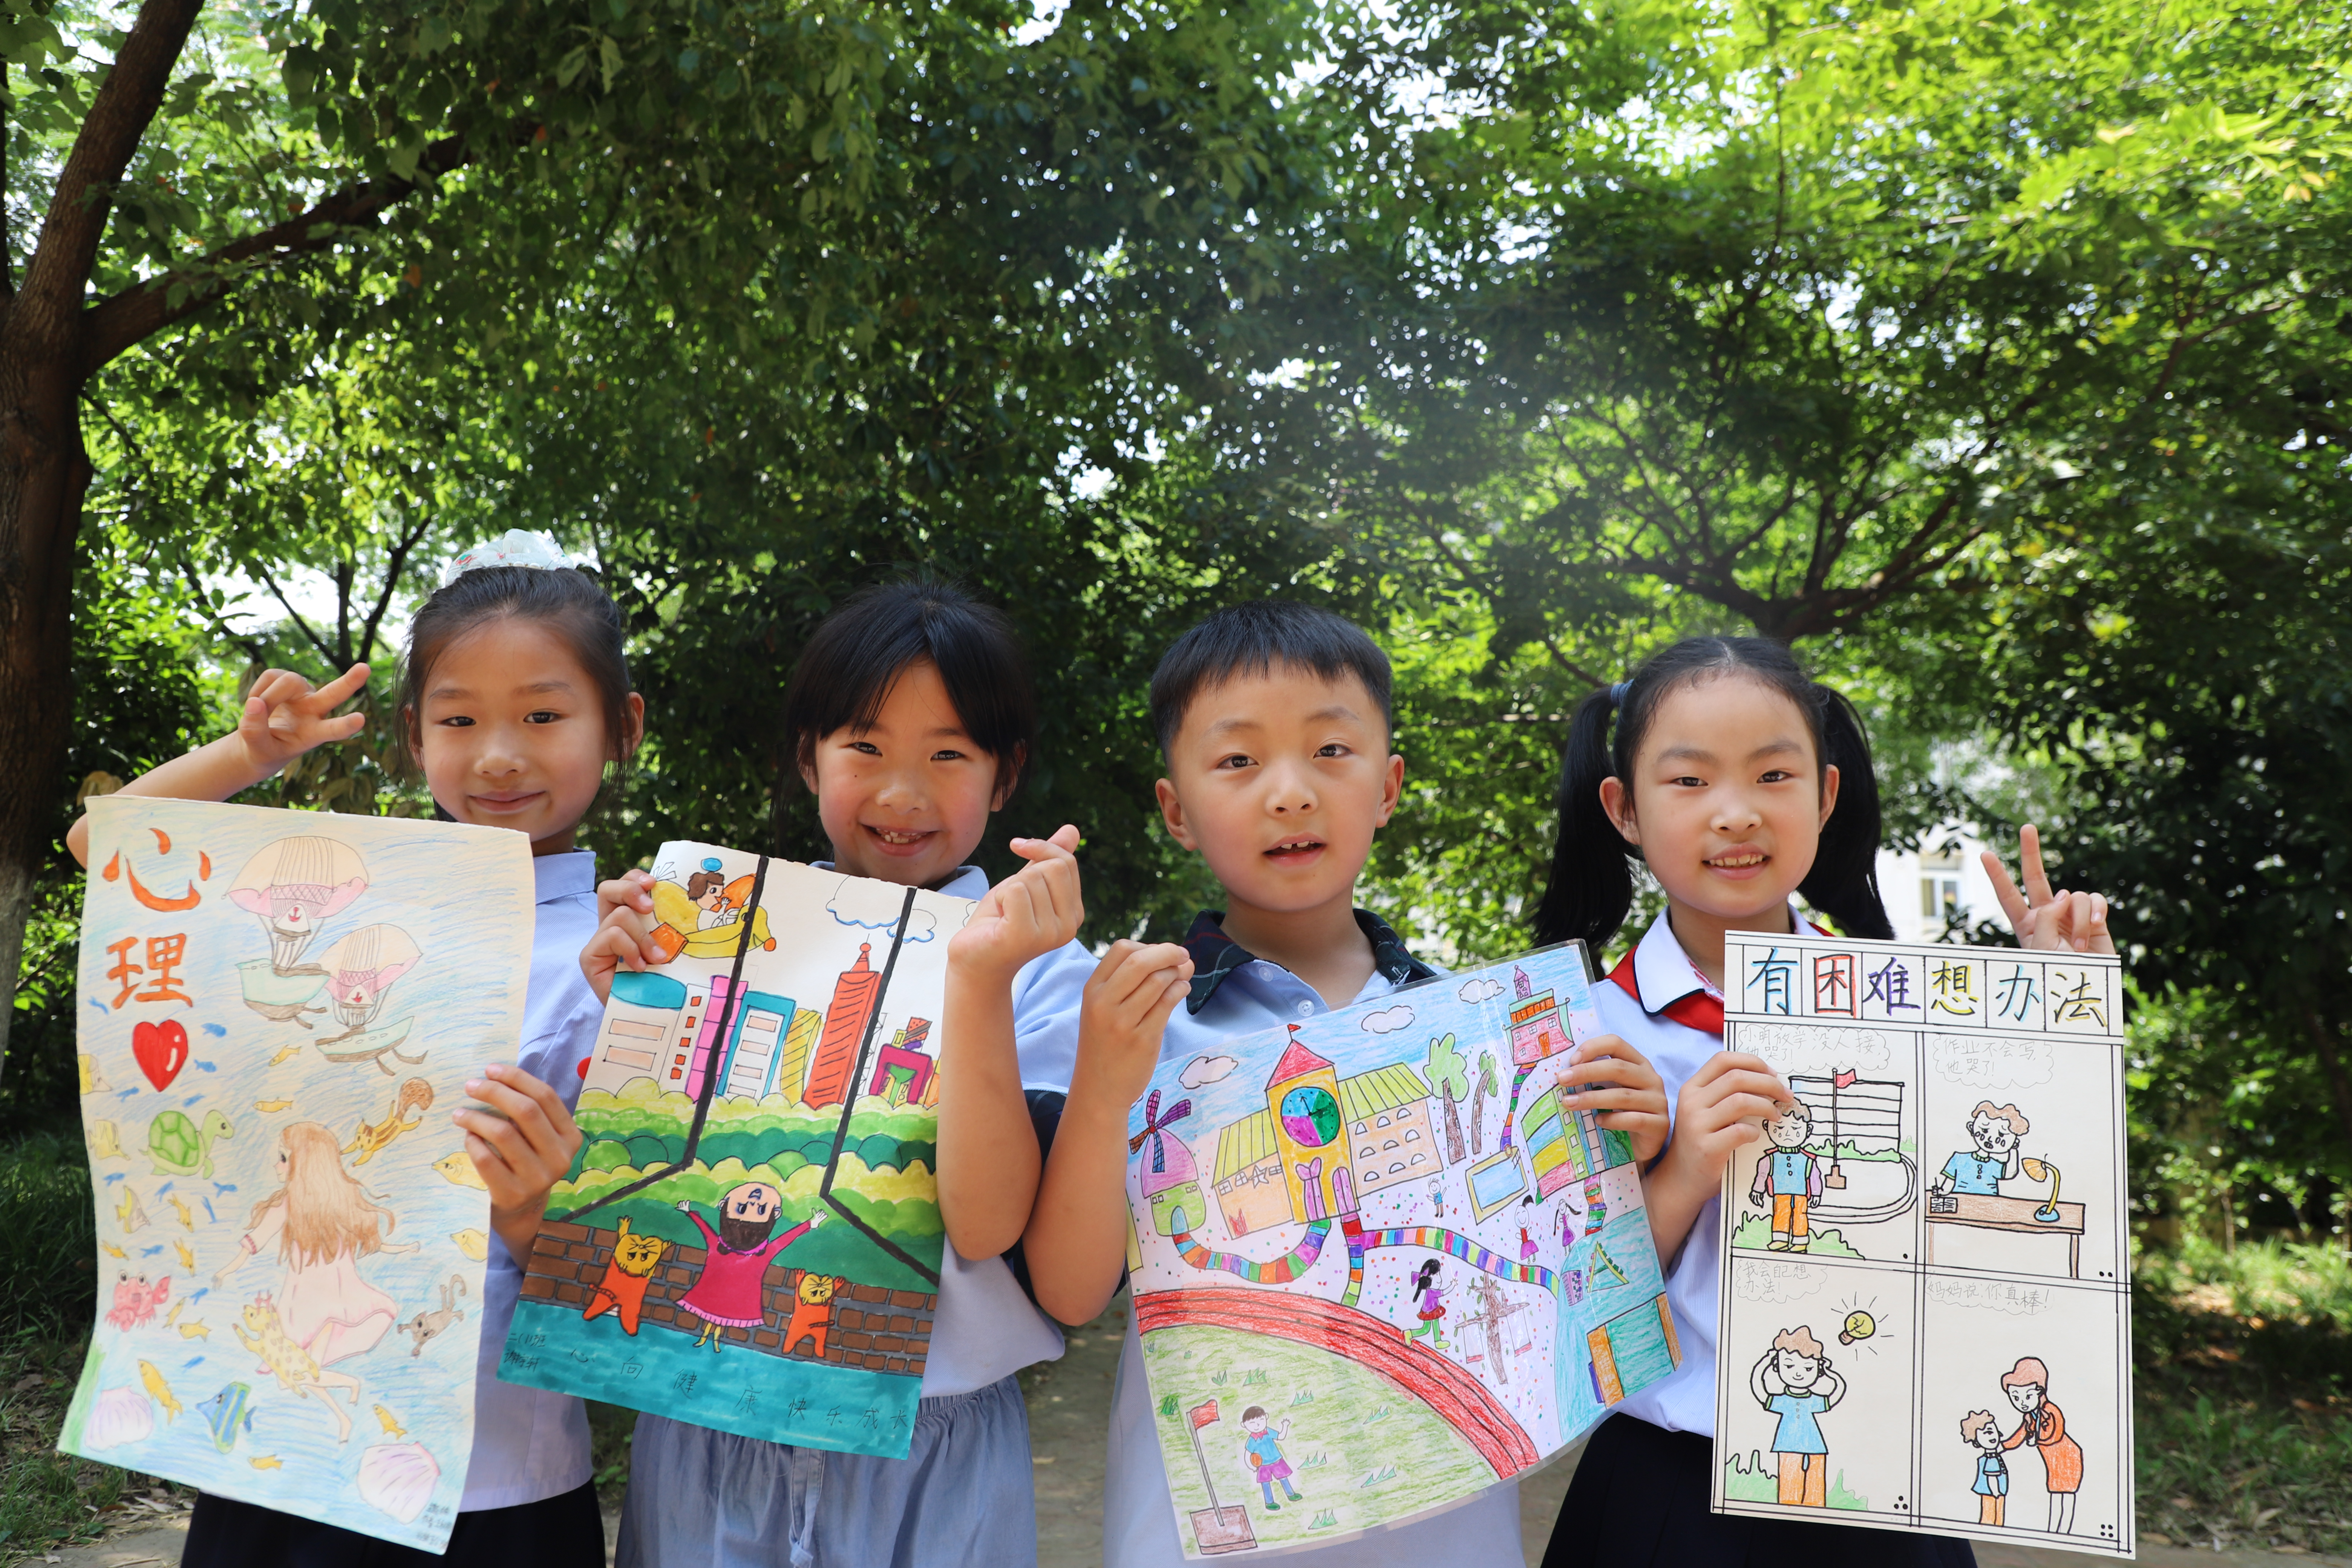 合肥市芙蓉小学举办以“心向阳光”为主题的心理健康绘画活动.JPG